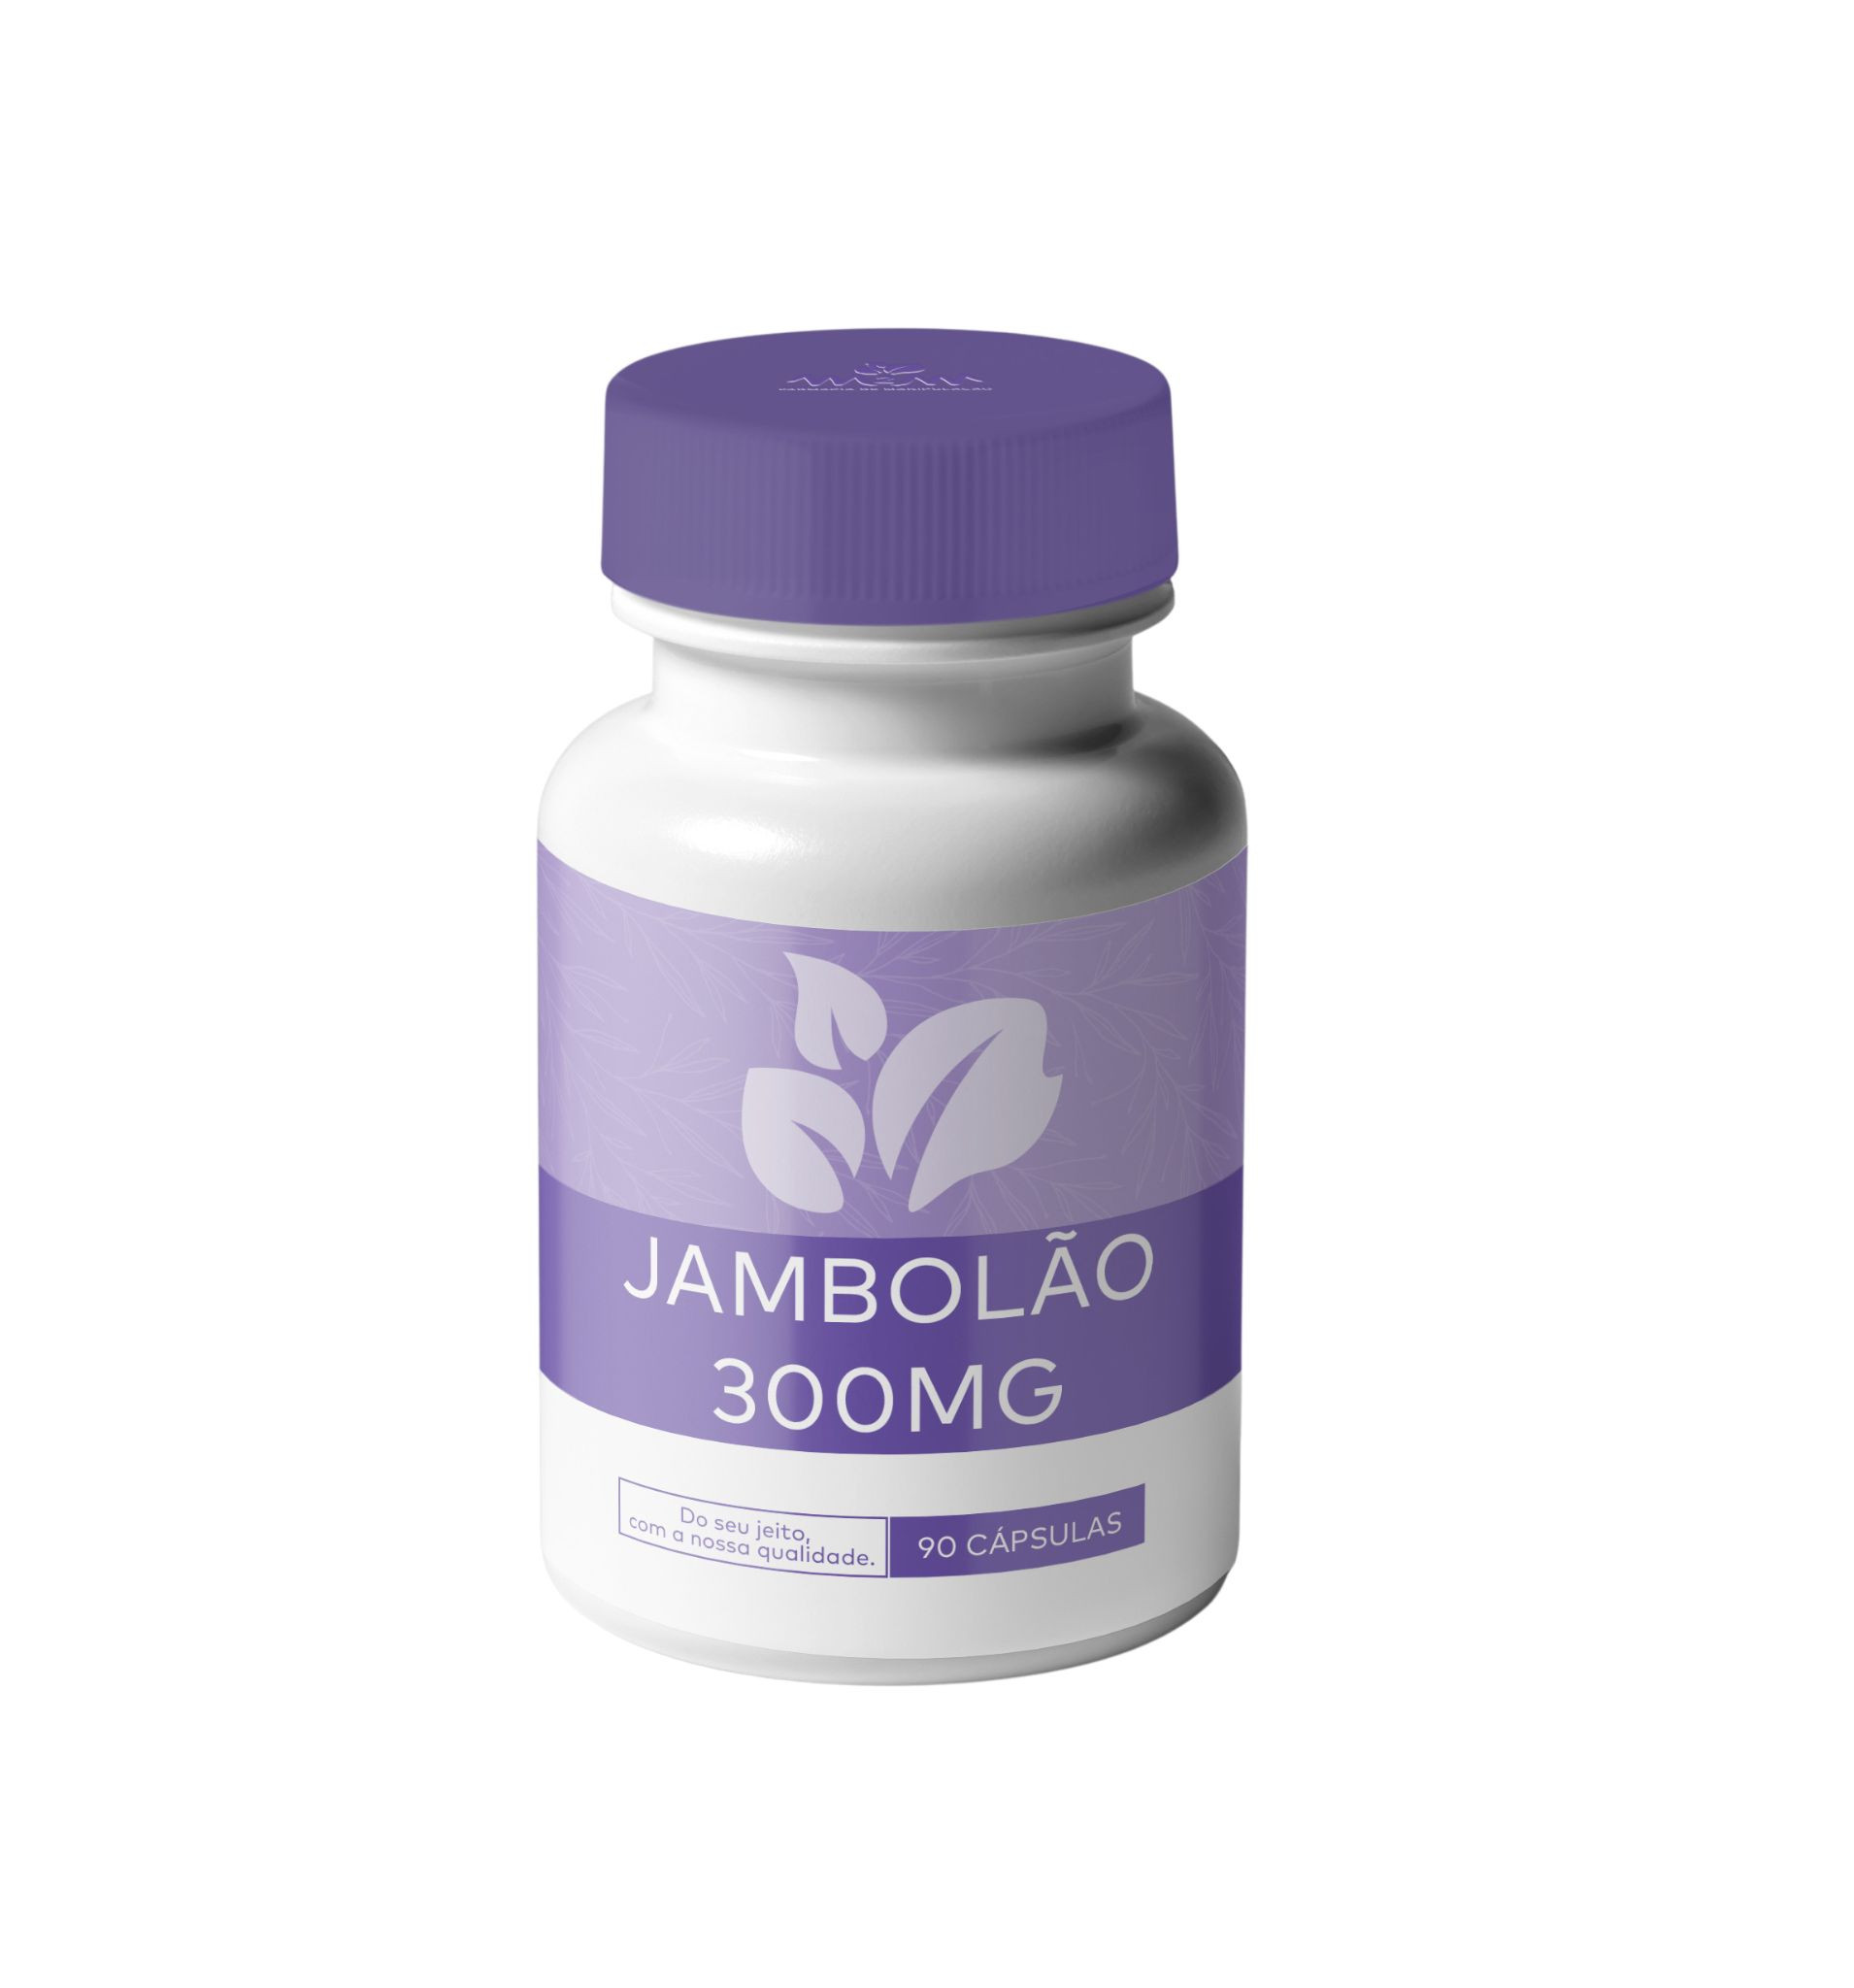 jambolão 300mg - Cápsulas com Ação antioxidante, previne o envelhecimento, antiviral, anti-inflamatória e antialérgica. 